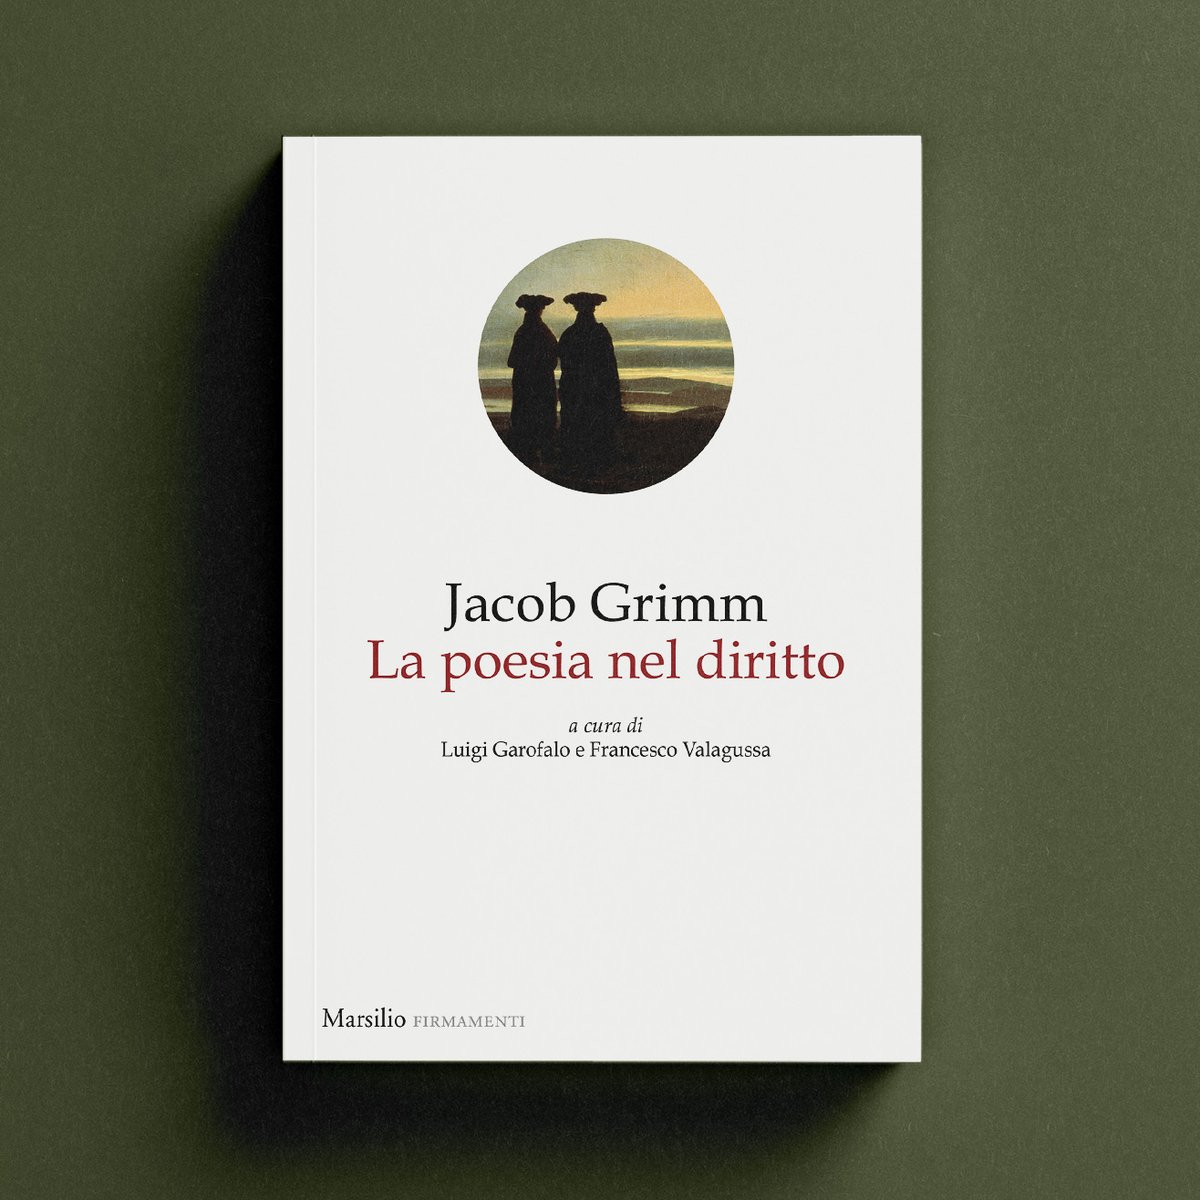 ✍️ Jacob Grimm 📖 La poesia nel diritto a cura di Luigi Garofalo e Francesco Valagussa Da oggi in libreria! #Marsilio #firmamenti #JacobGrimm #lapoesianeldiritto